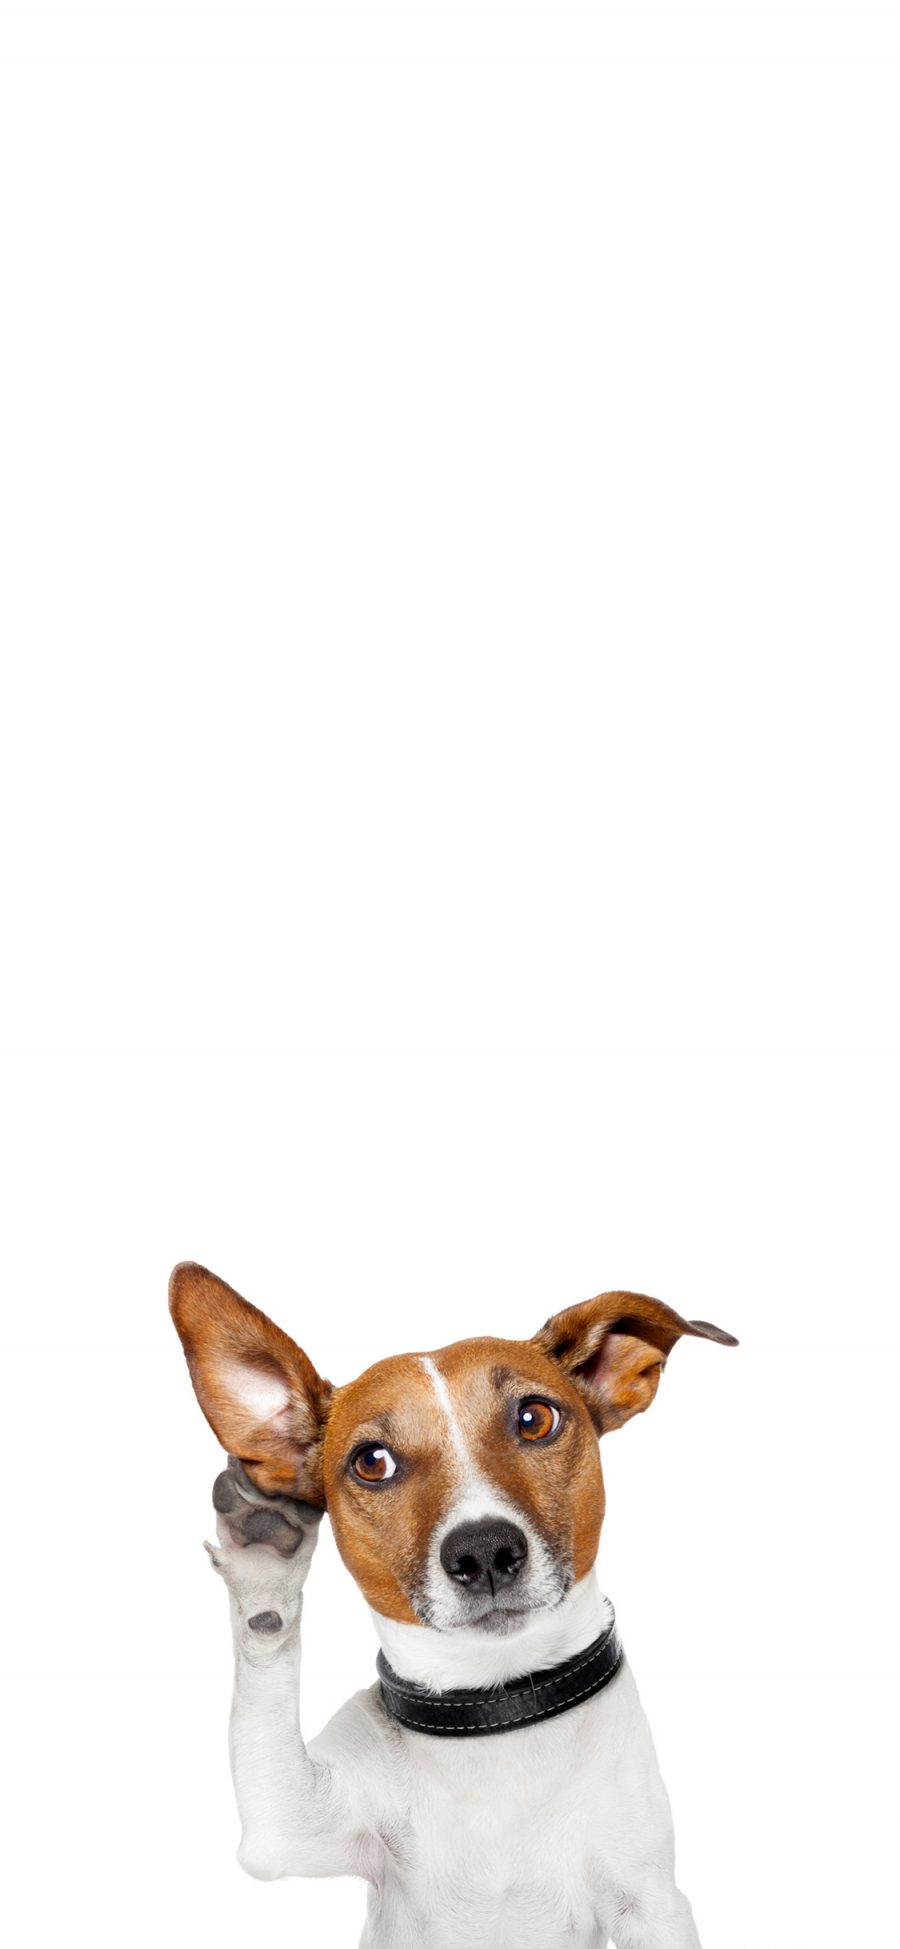 [2436×1125]狗 可爱 萌 宠物 犬 汪星人 苹果手机壁纸图片